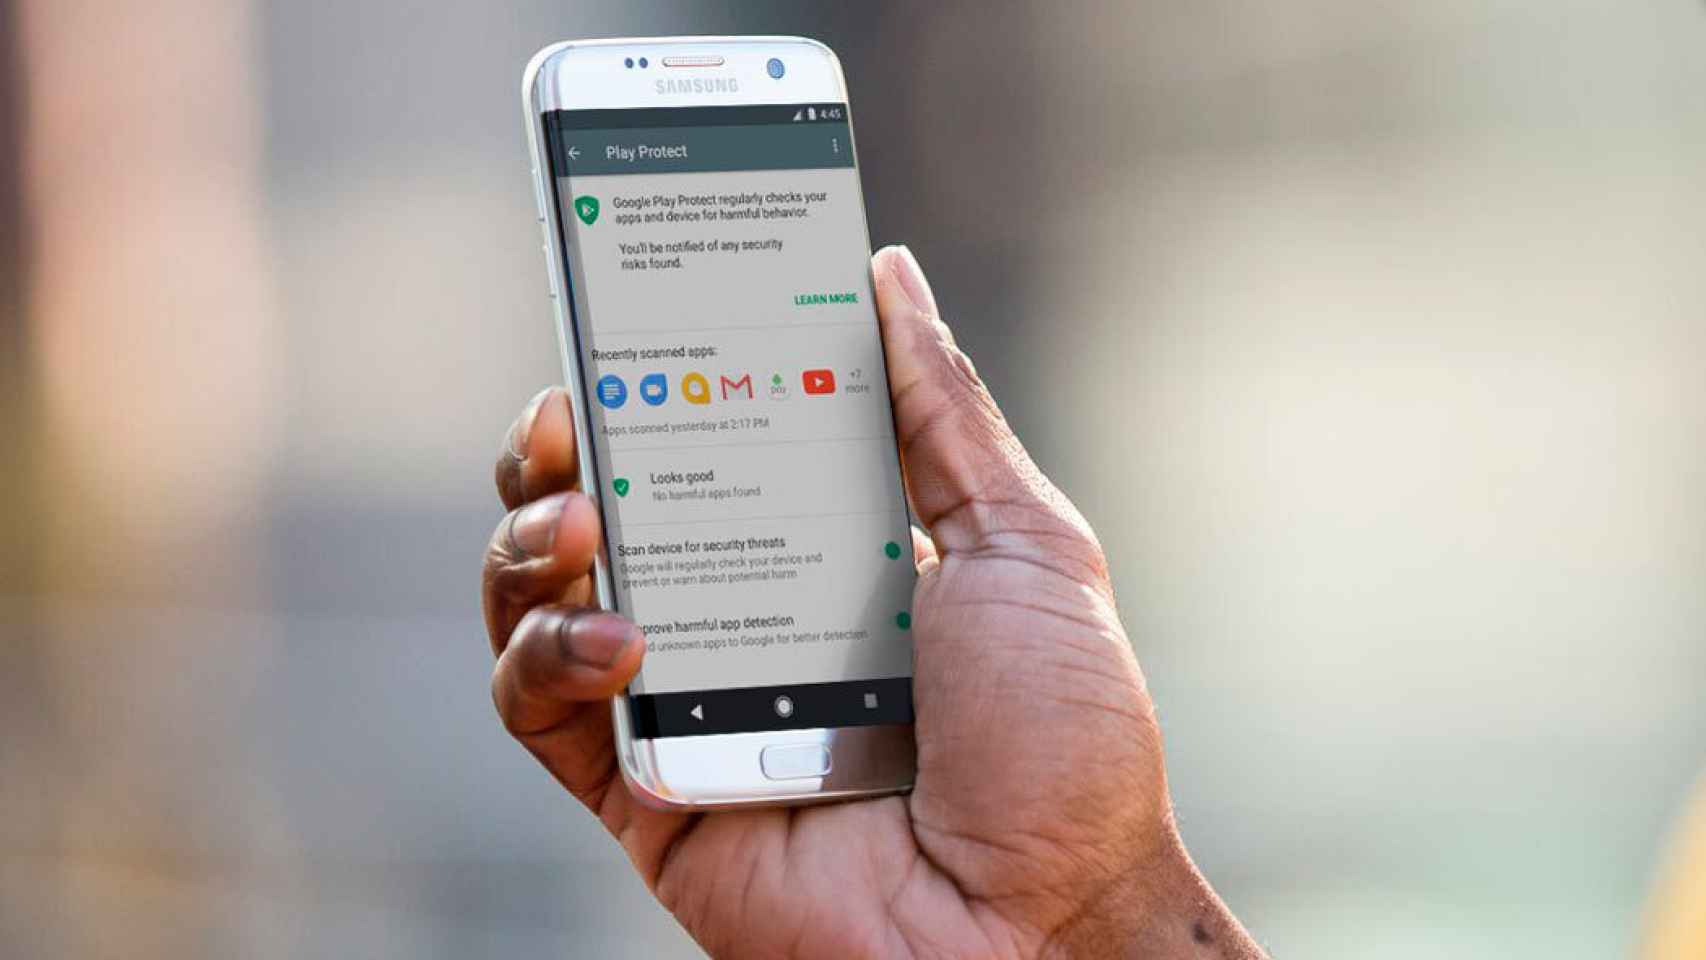 Google analiza a diario tu móvil: así ha mejorado la seguridad en Android